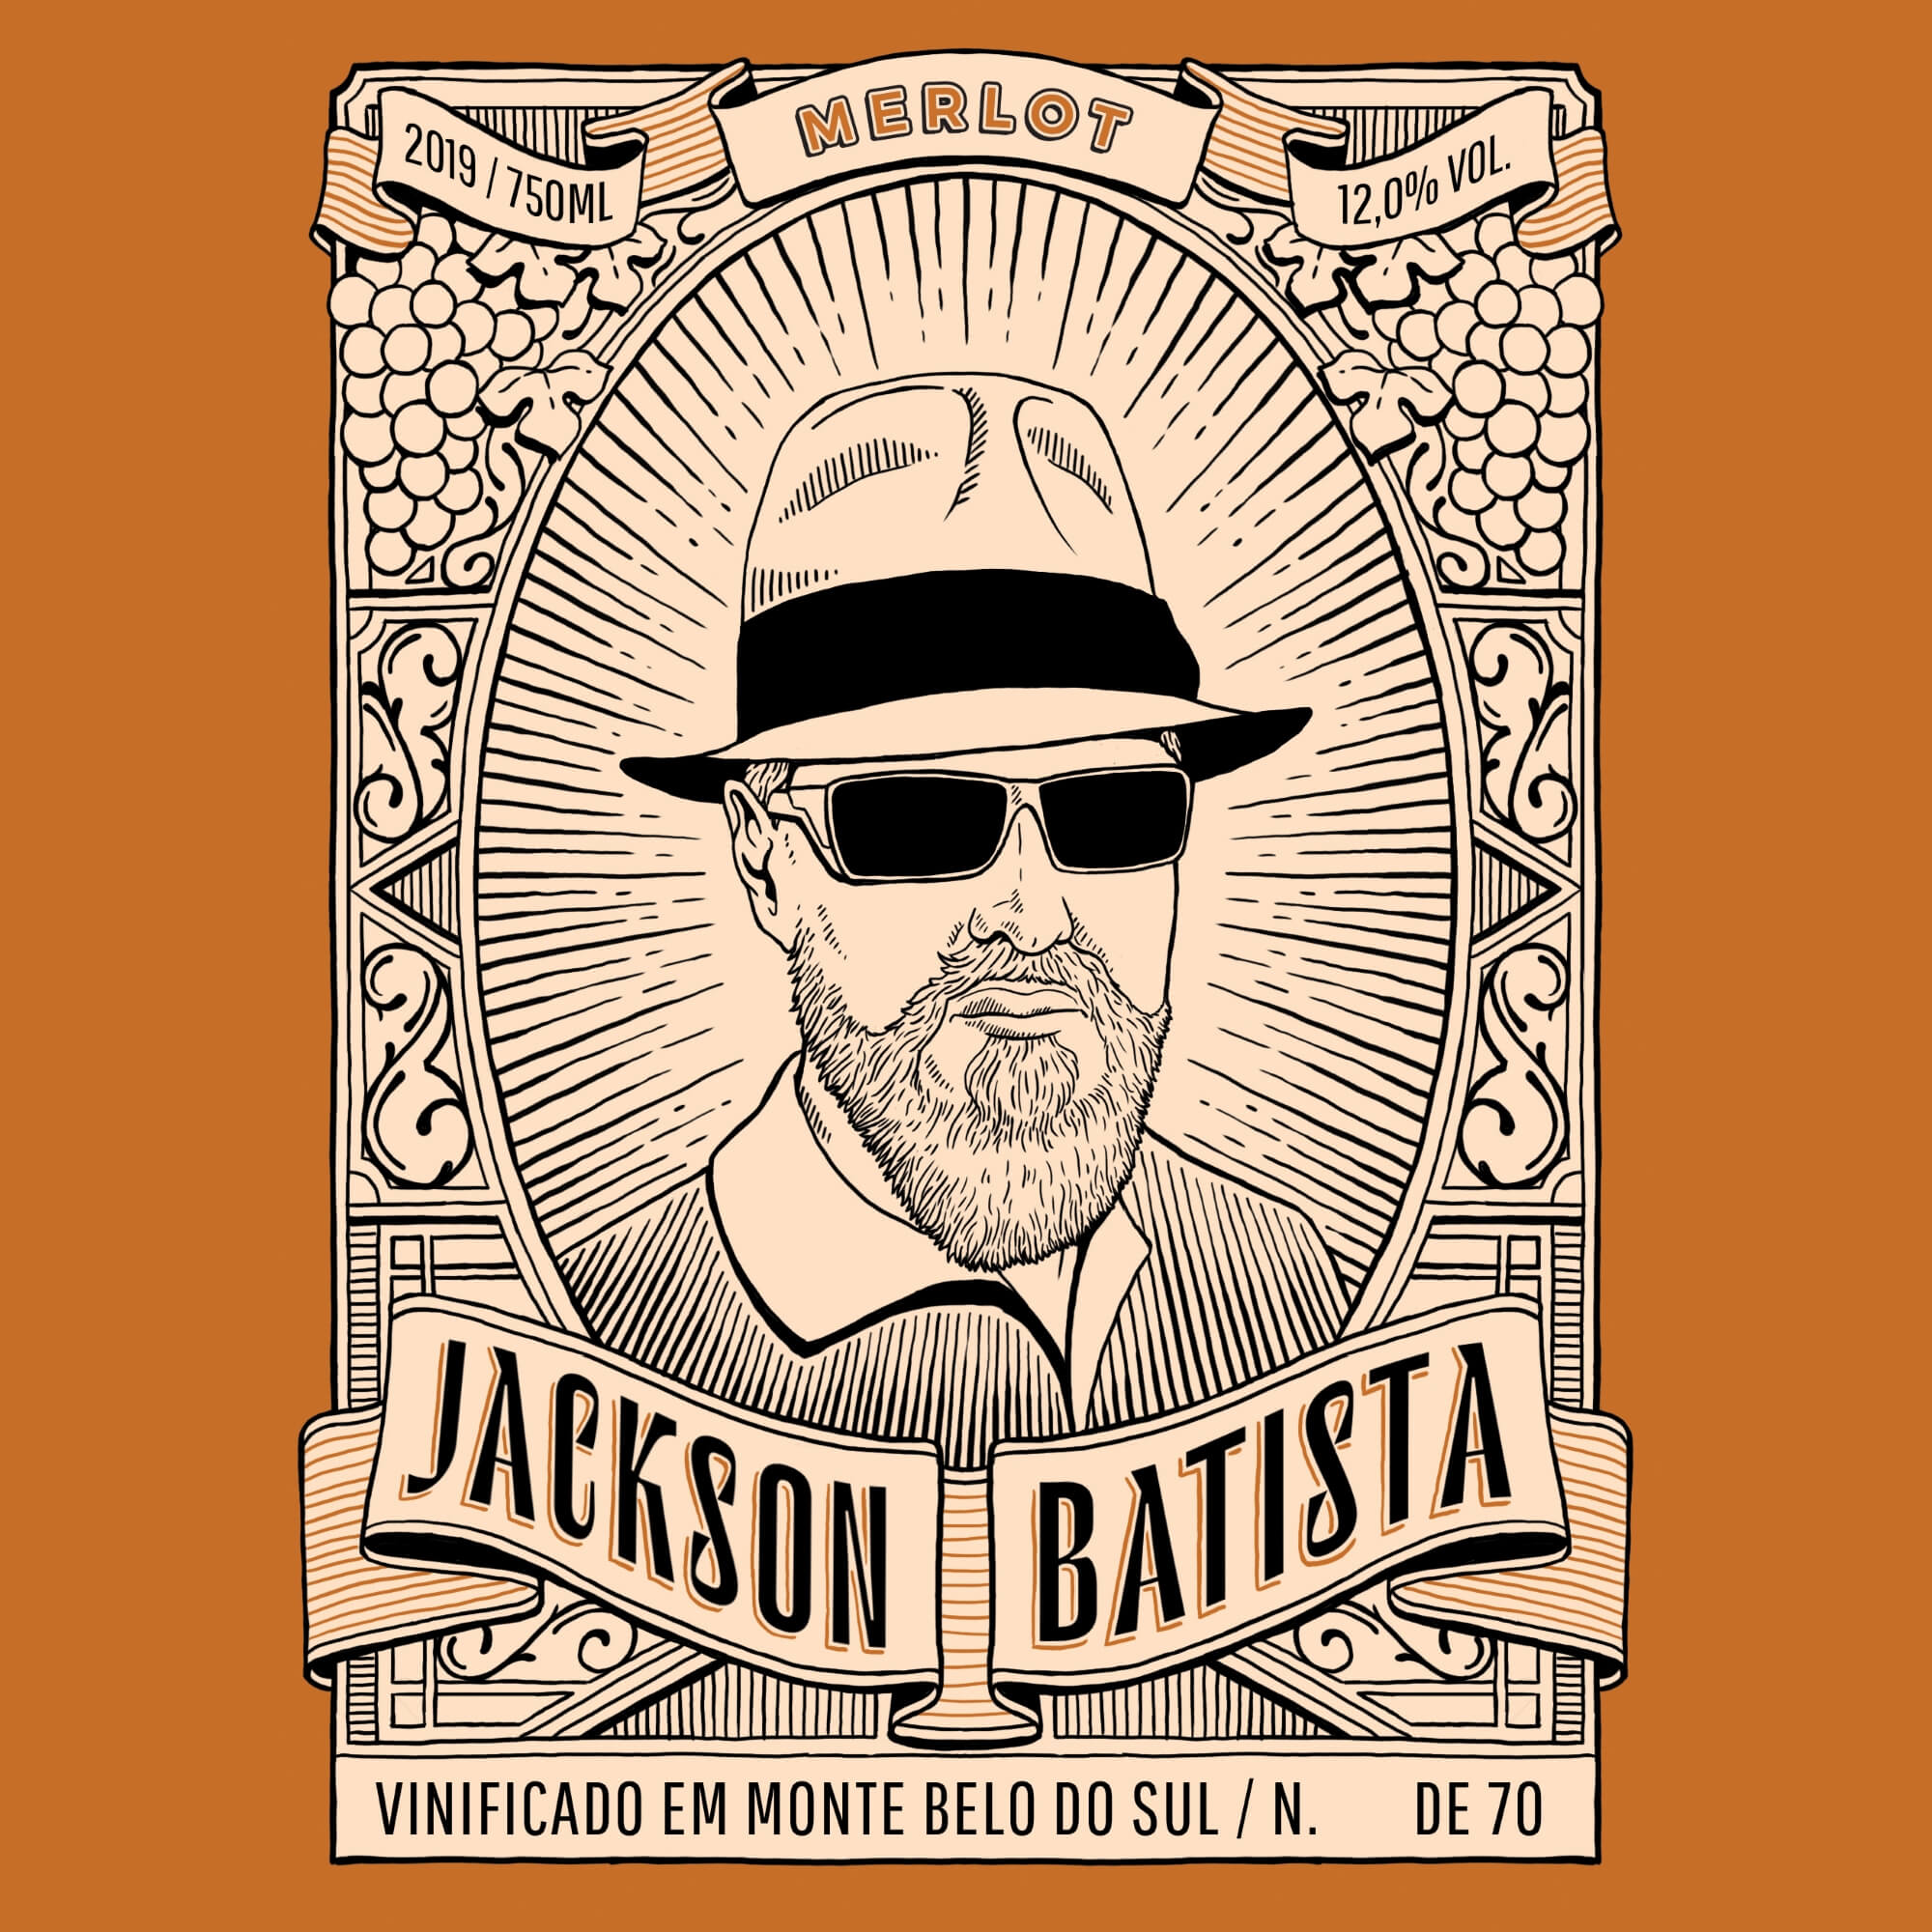 Projeto Jackson Batista